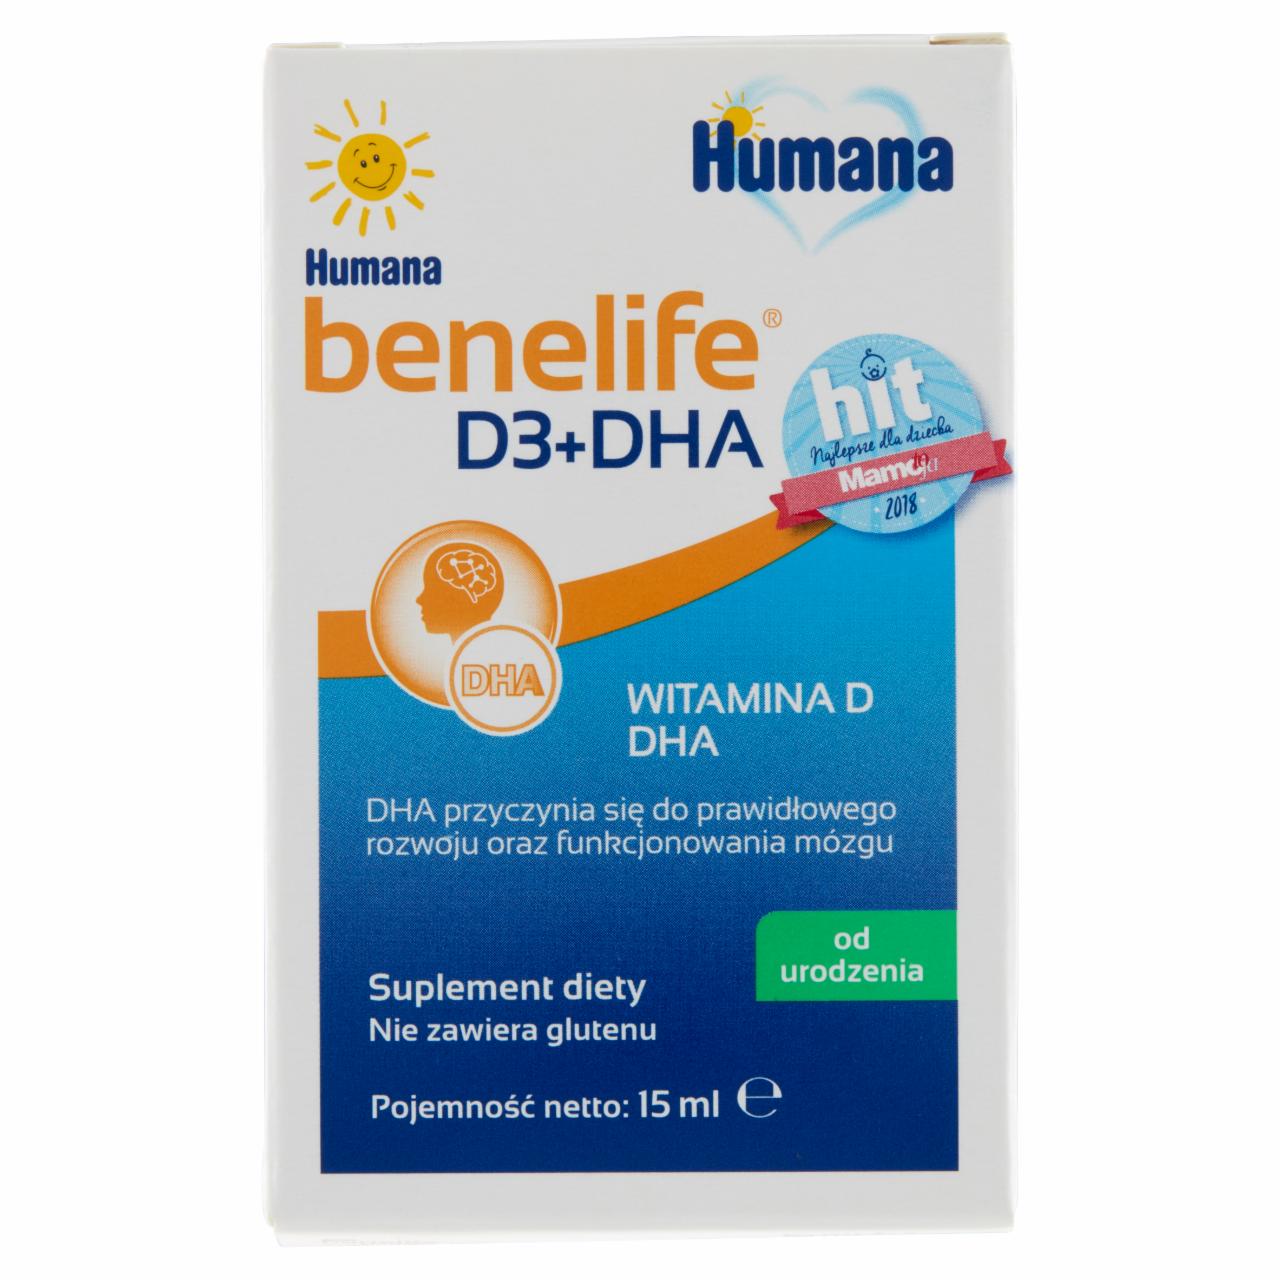 Zdjęcia - Humana benelife Suplement diety D3+DHA od urodzenia 15 ml